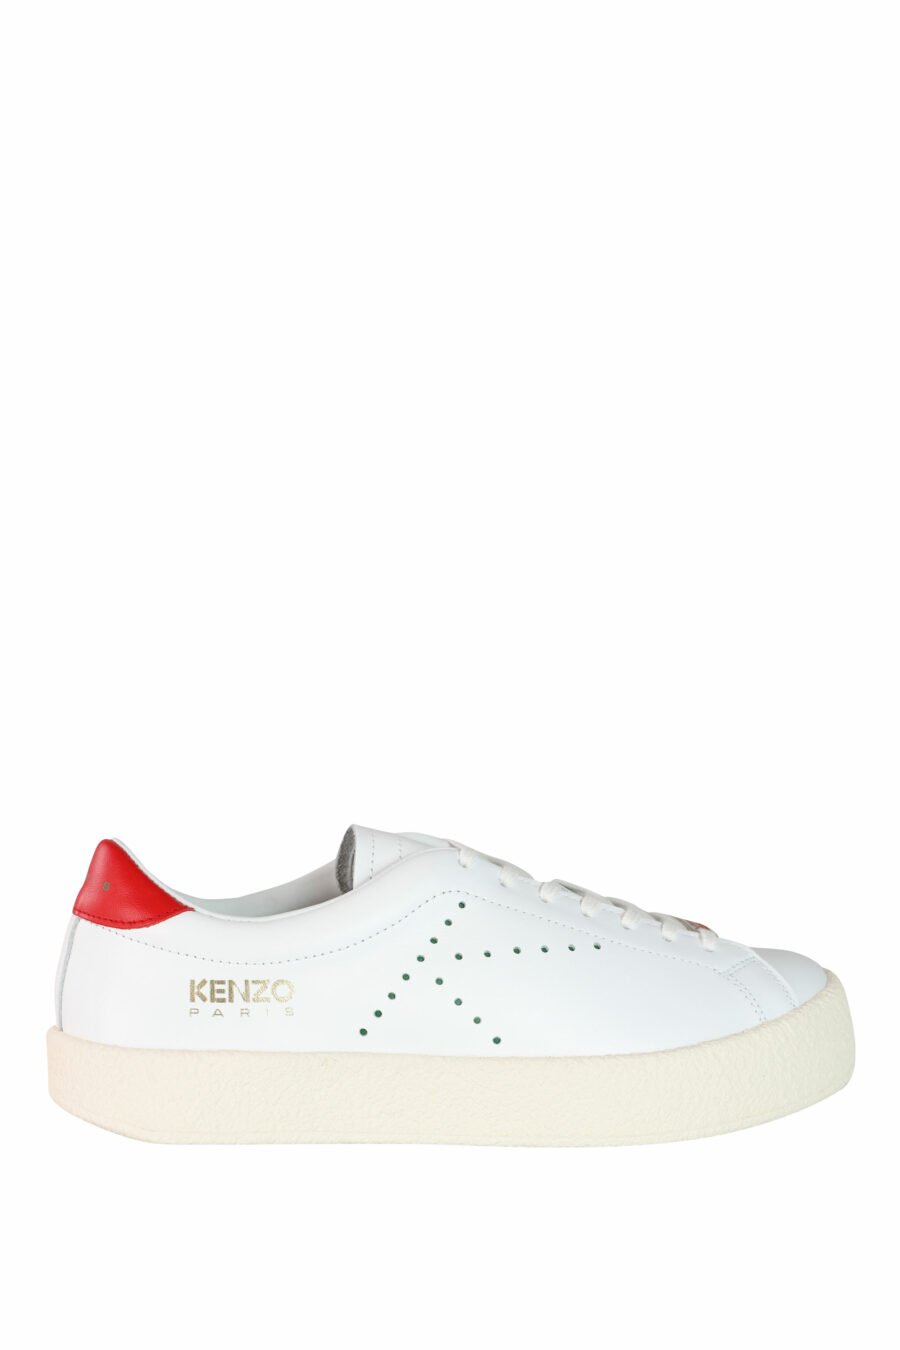 Zapatillas blancas "kenzoswing" con detalle rojo y logo - IMG 3552